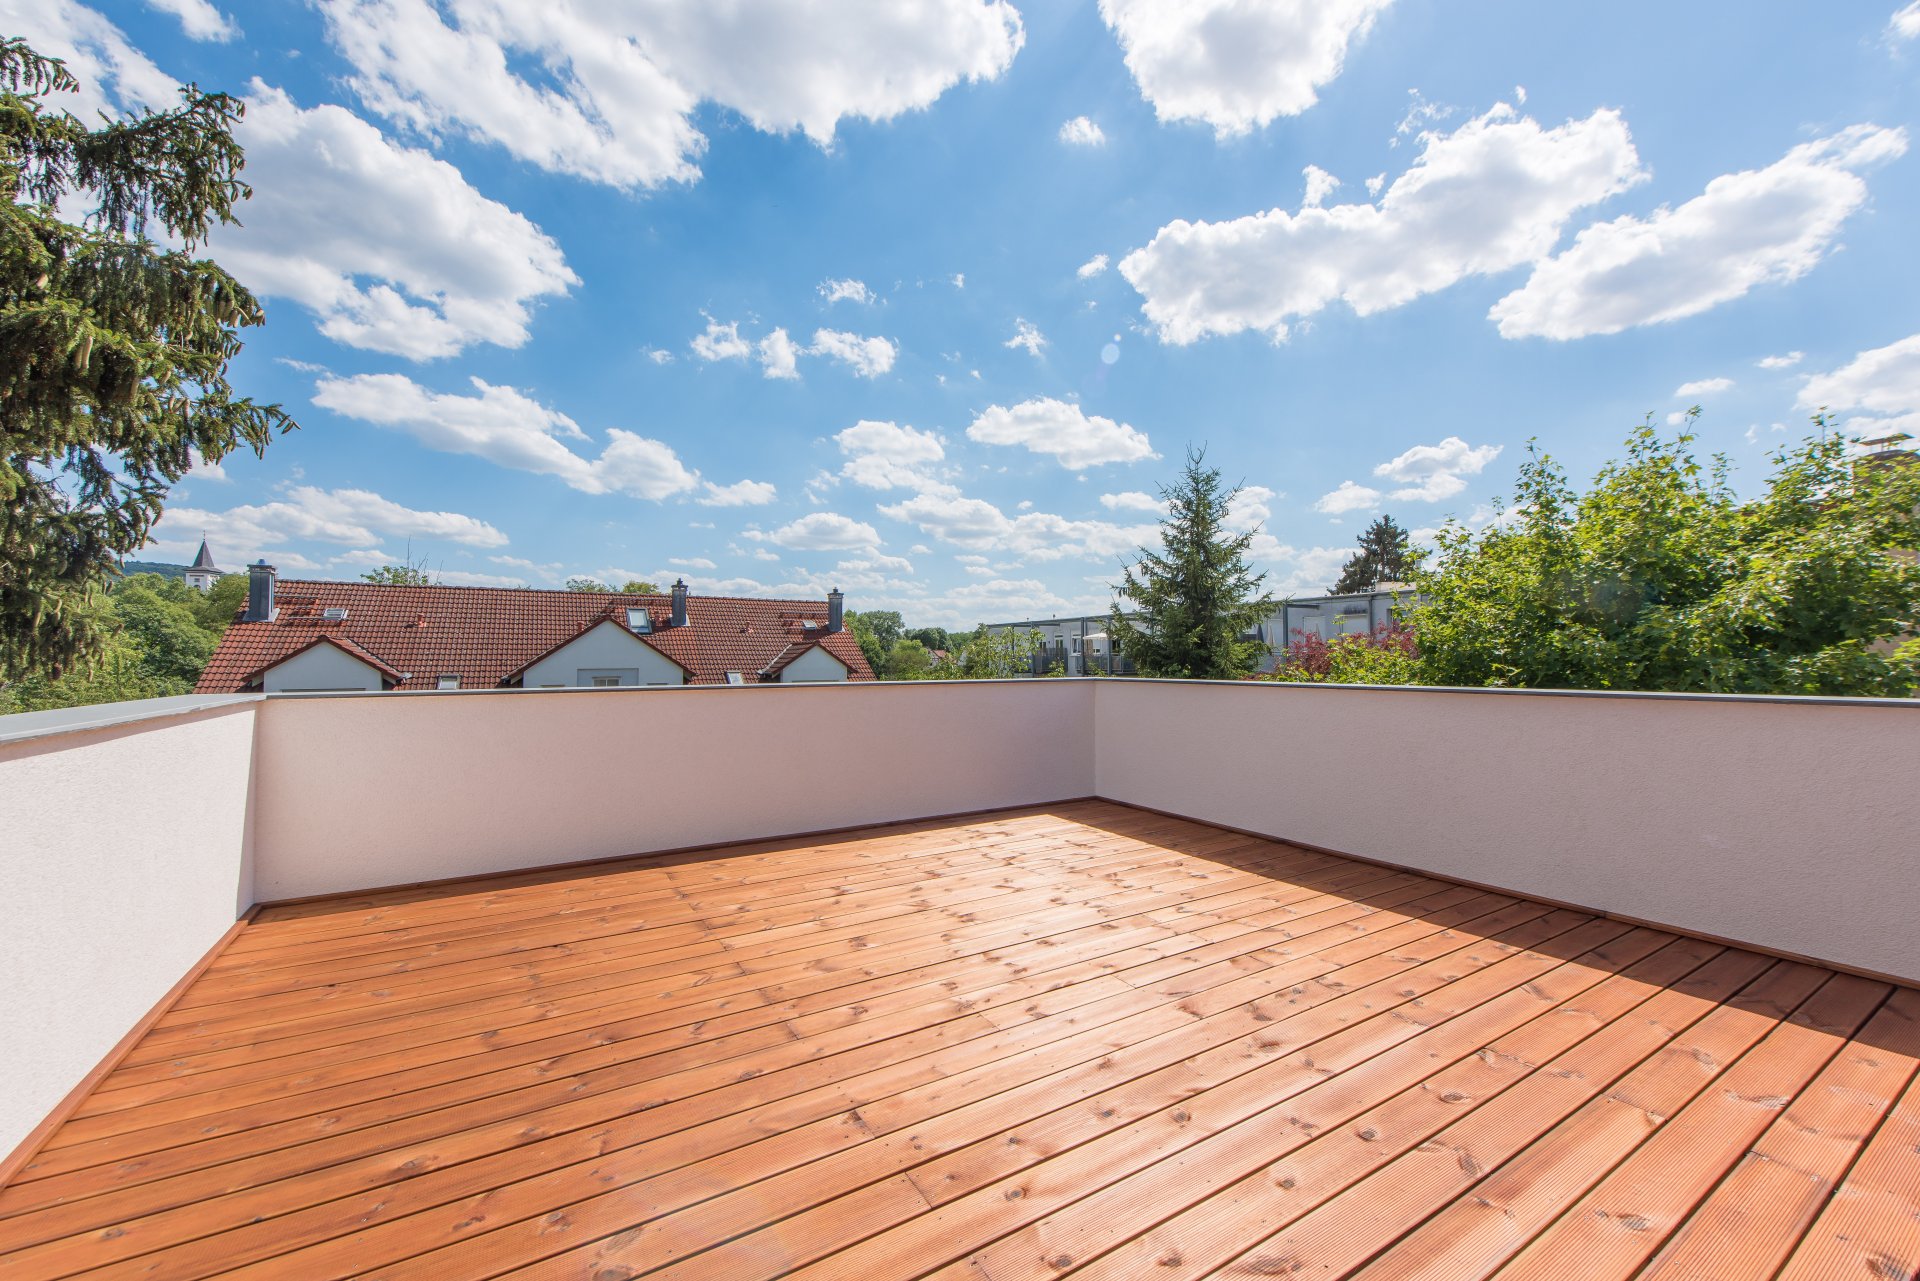 Dachterrasse mit Blick ins Grüne - Oliver Reifferscheid - Immobilienmakler Darmstadt